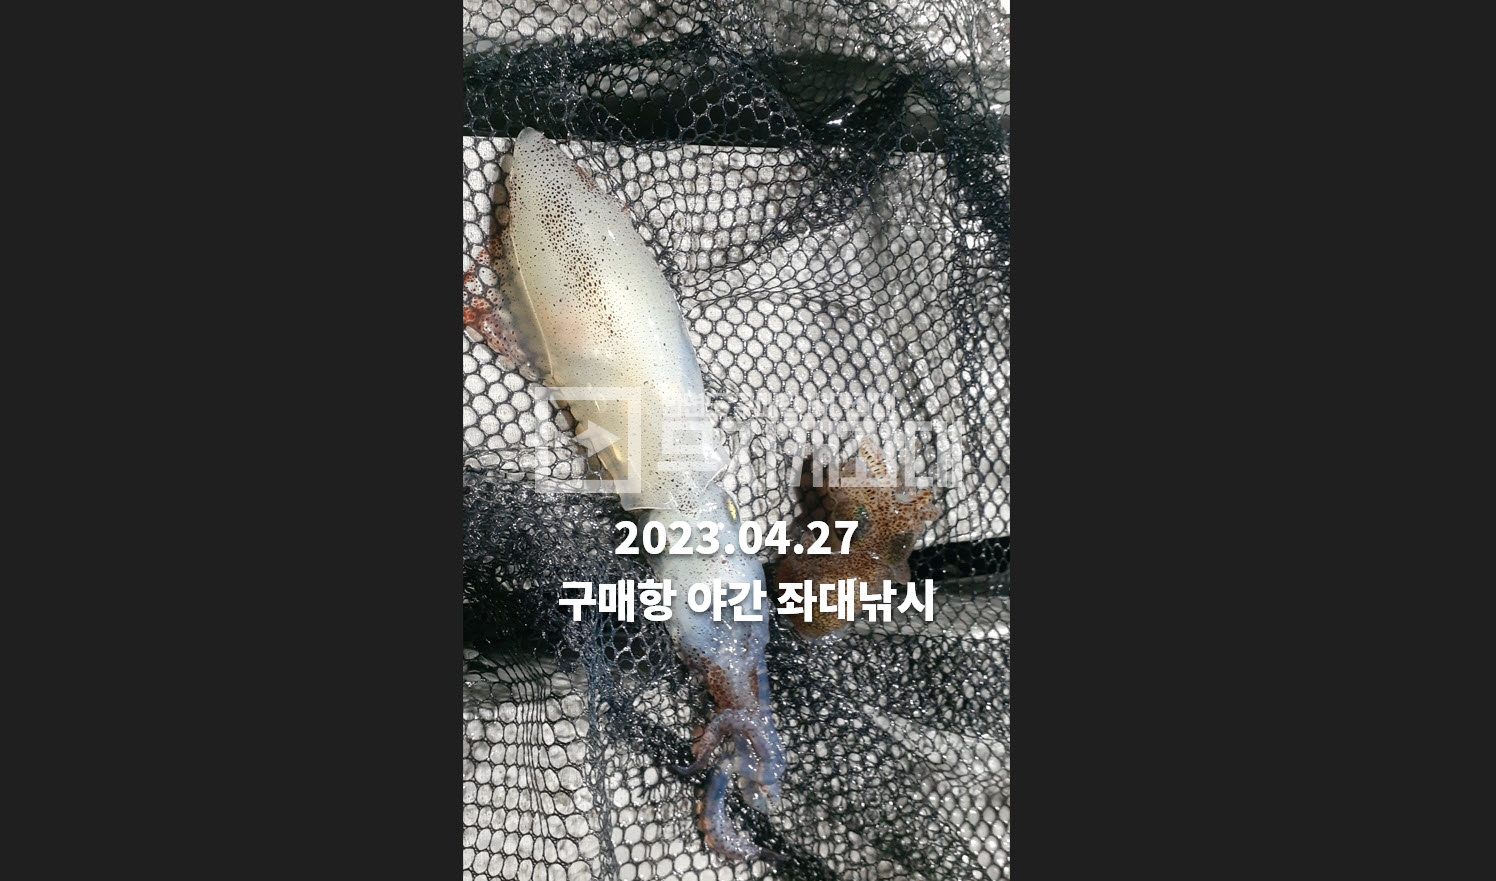 4월 28일 - 구매항좌대낚시 야간낚시 조황 - 우럭,숭어,놀래미